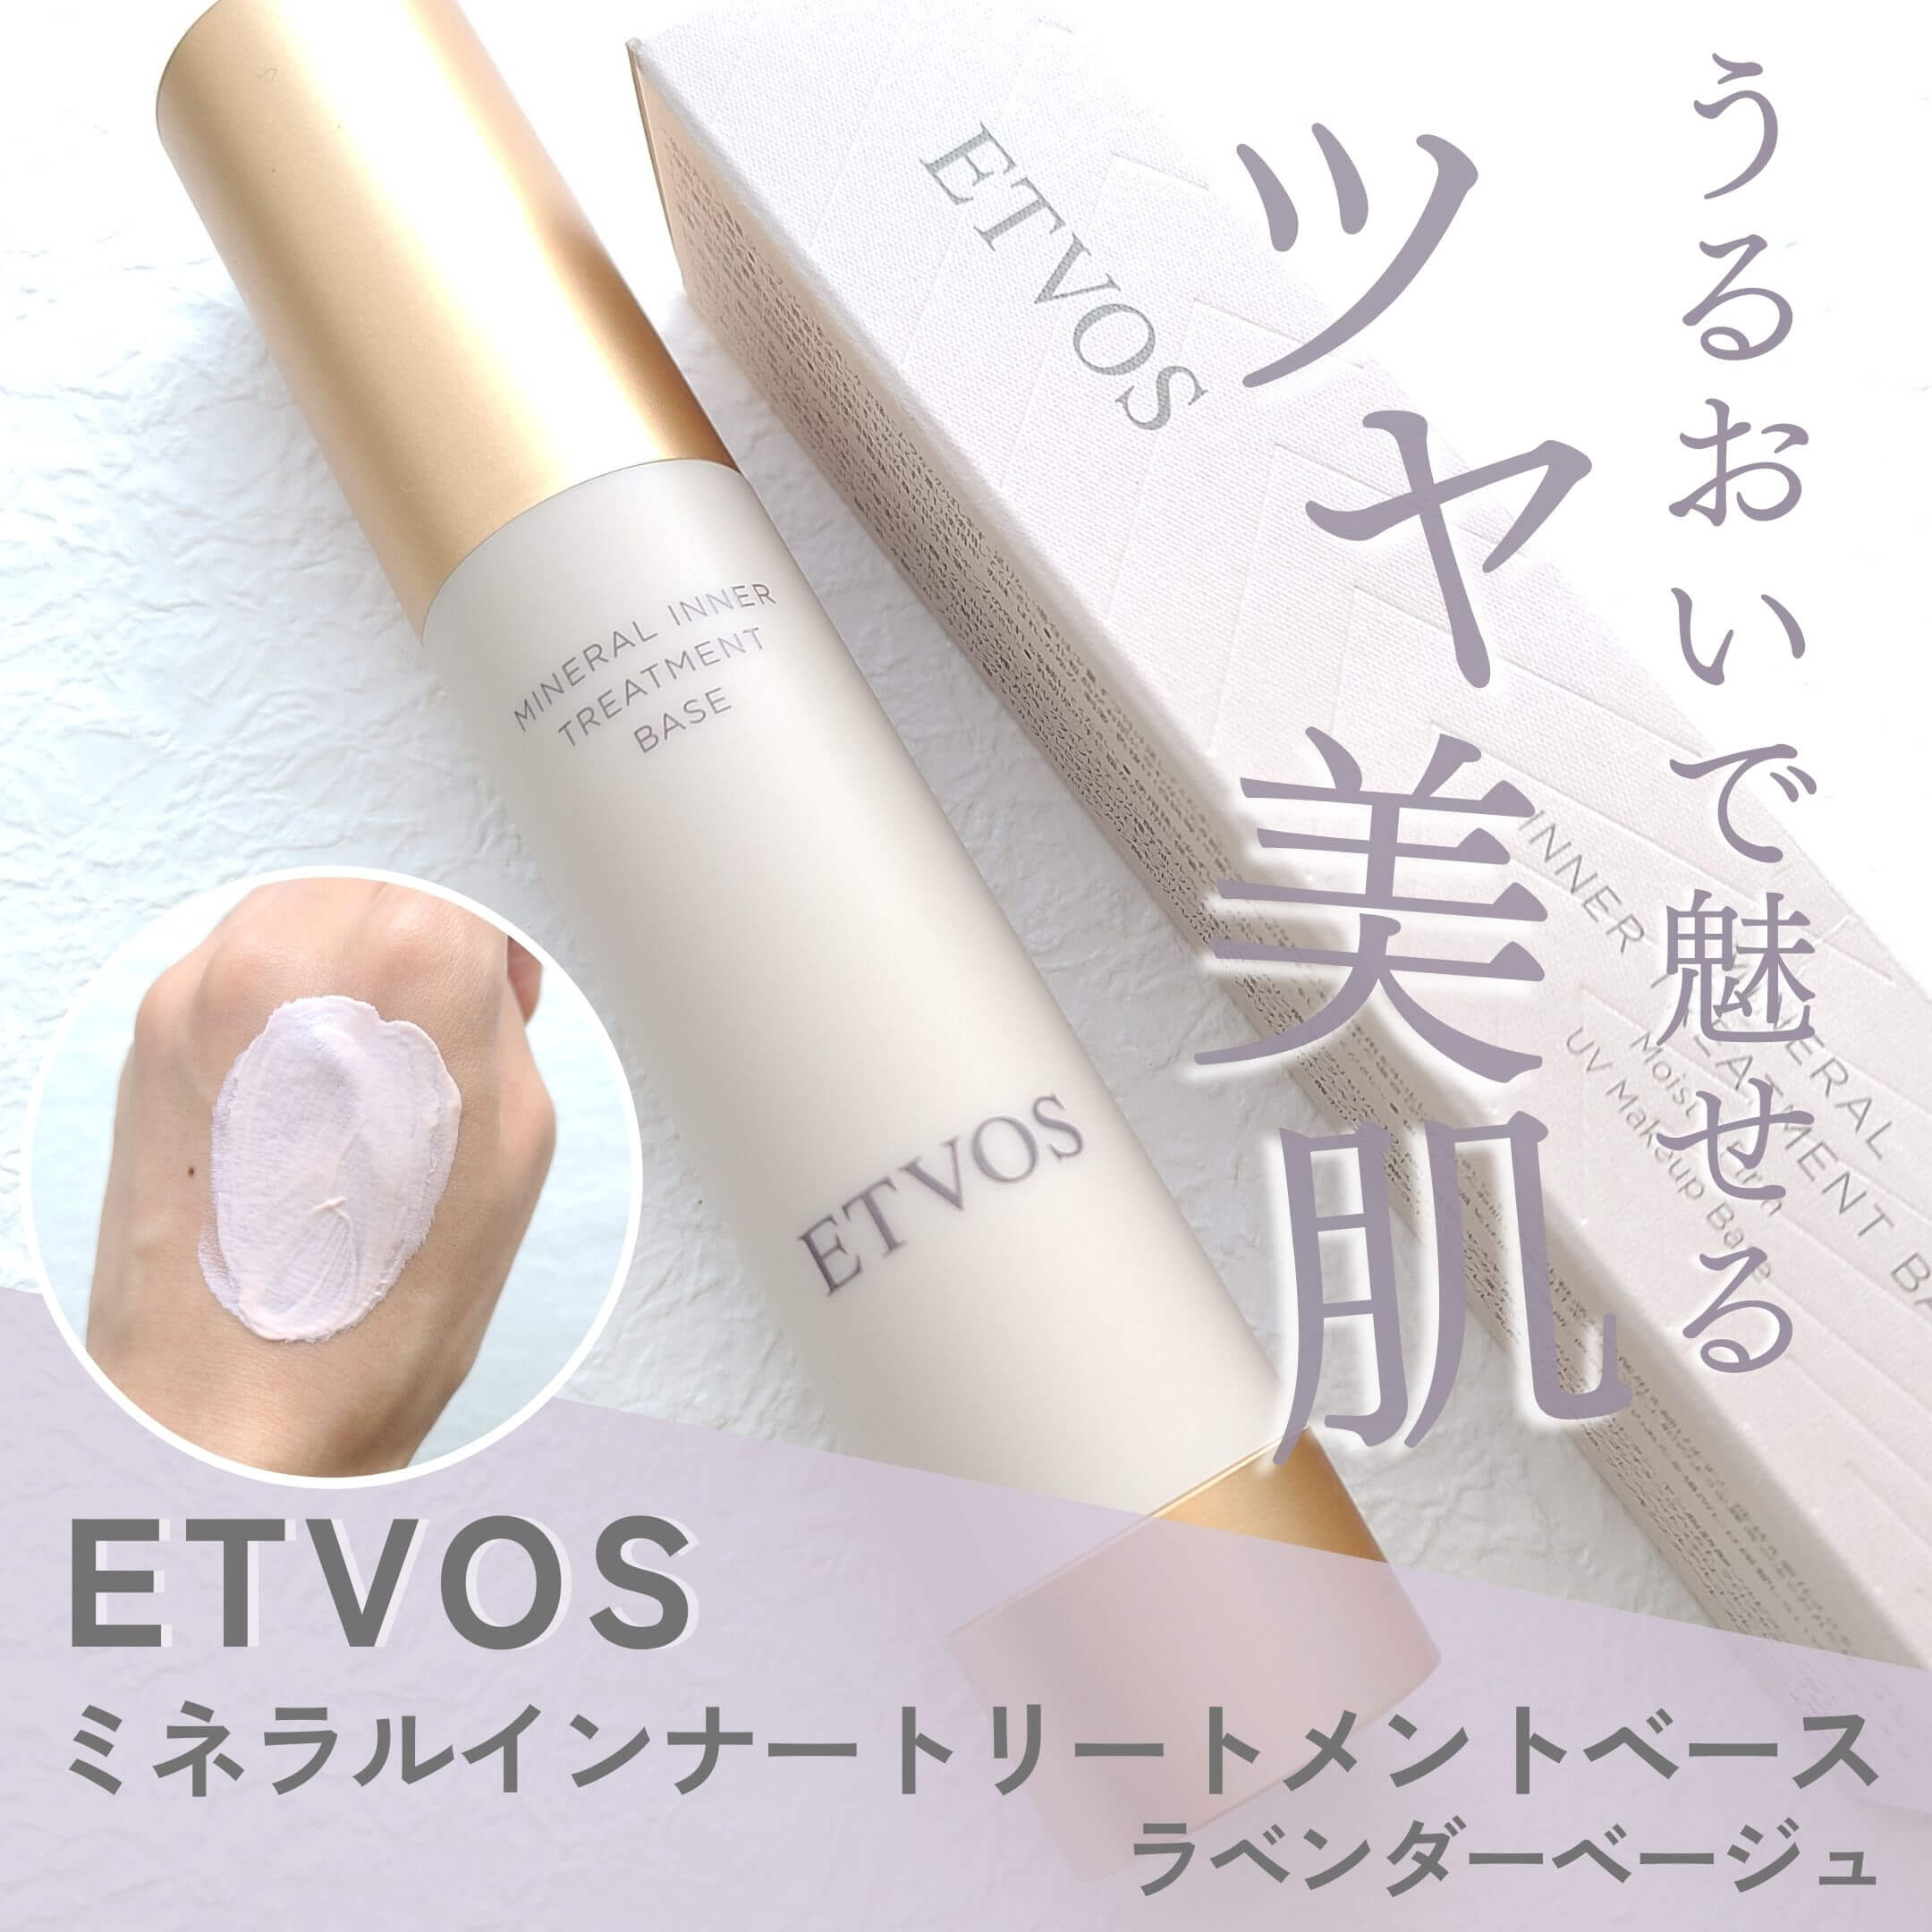 【ETVOS新色】潤いたっぷり！ミネラルインナートリートメントベースで魅せるツヤ美肌